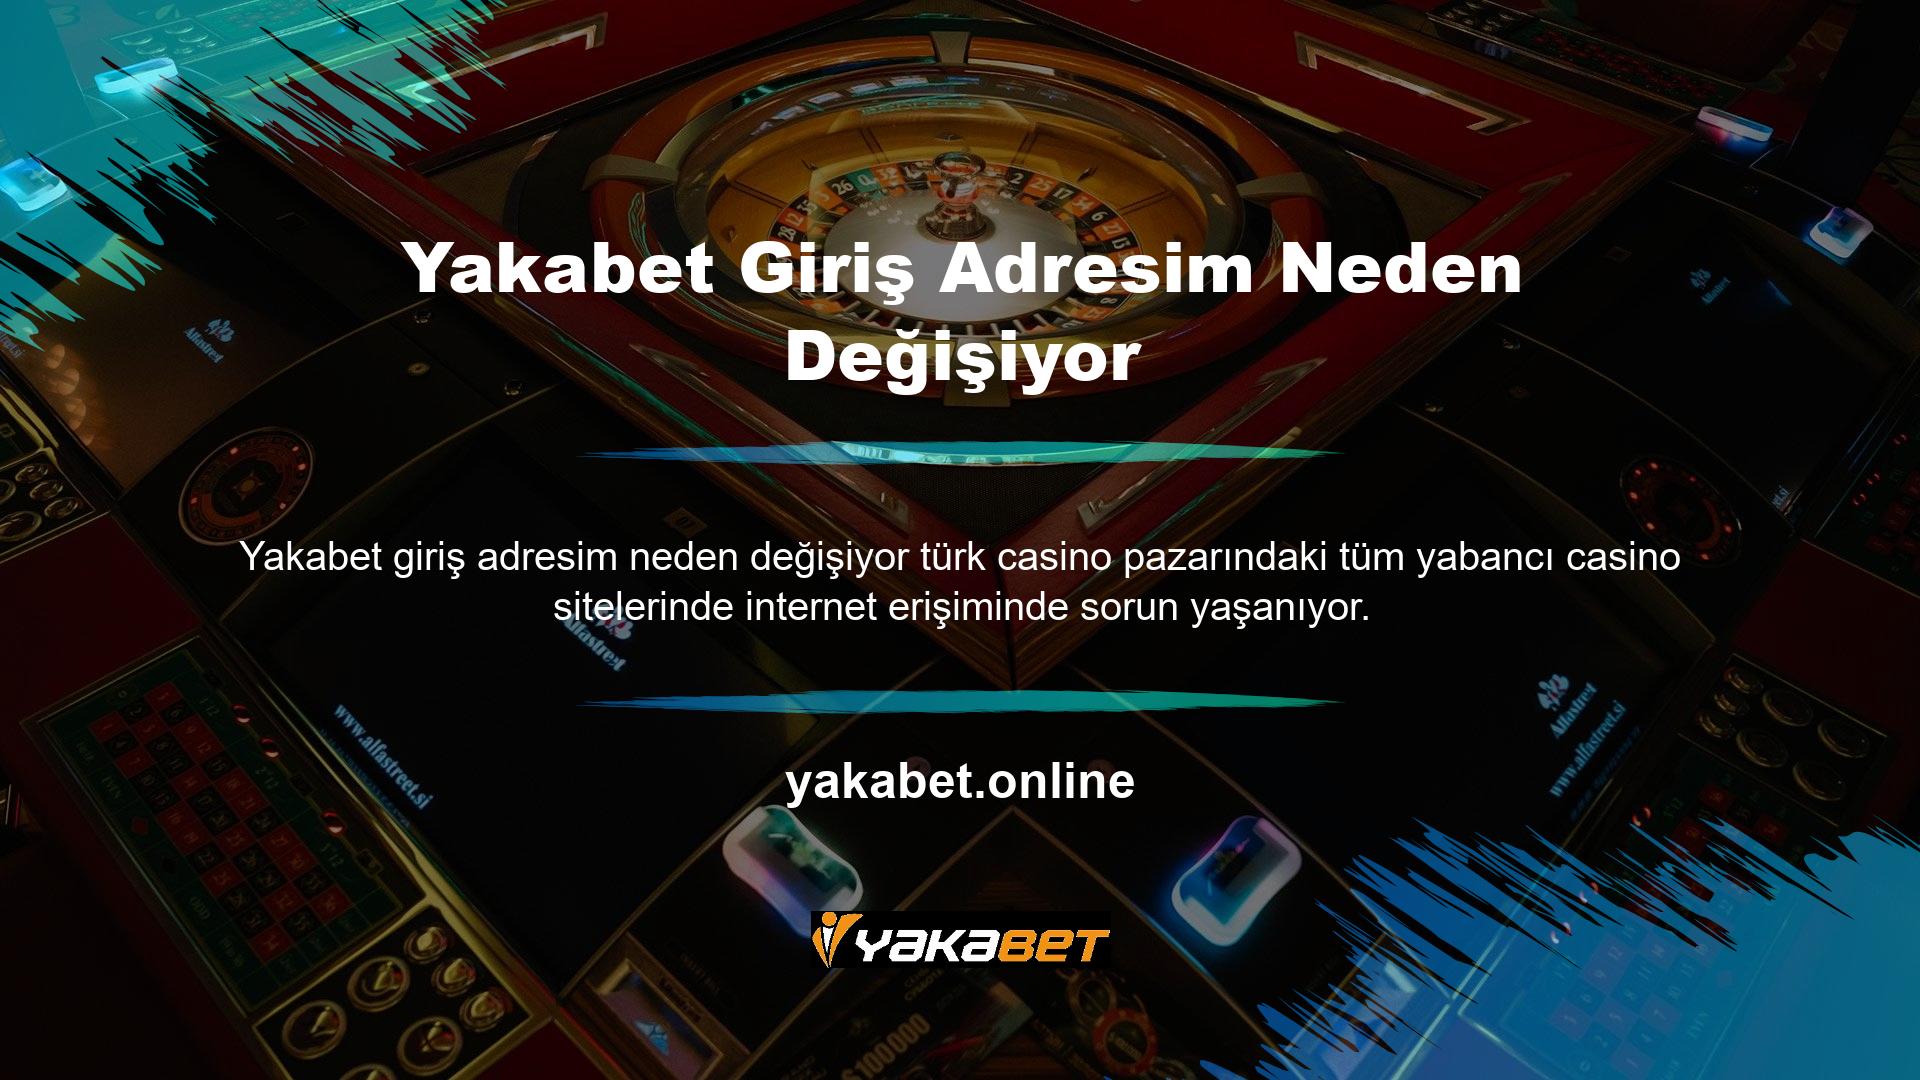 Casino Kanunu kapsamında Türk Casino Komisyonu'nun hizmet sunan casino web sitelerini düzenlemesi gerekmektedir